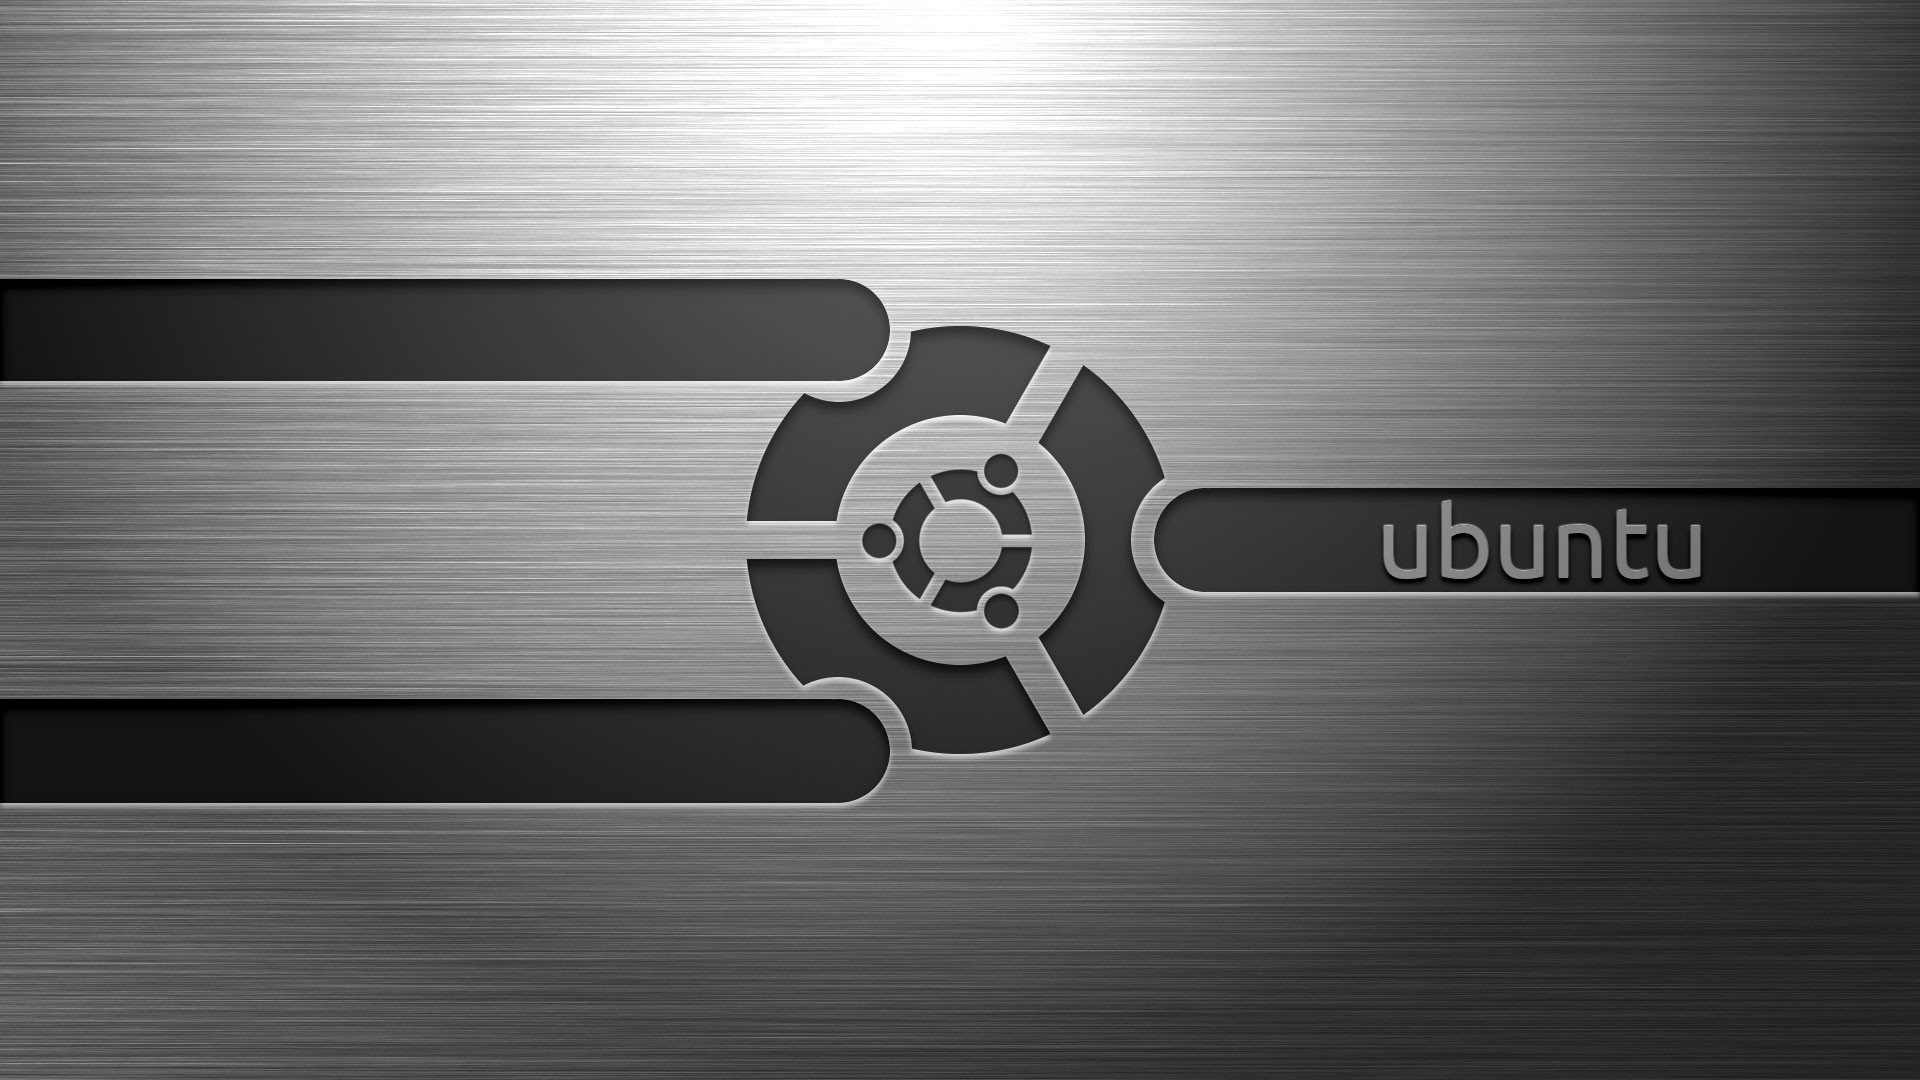 Ubuntu wallpaper: Hãy khám phá những hình nền Ubuntu độc đáo và đẹp mắt nhất để biến desktop của bạn thành một tác phẩm nghệ thuật sống động và độc đáo.